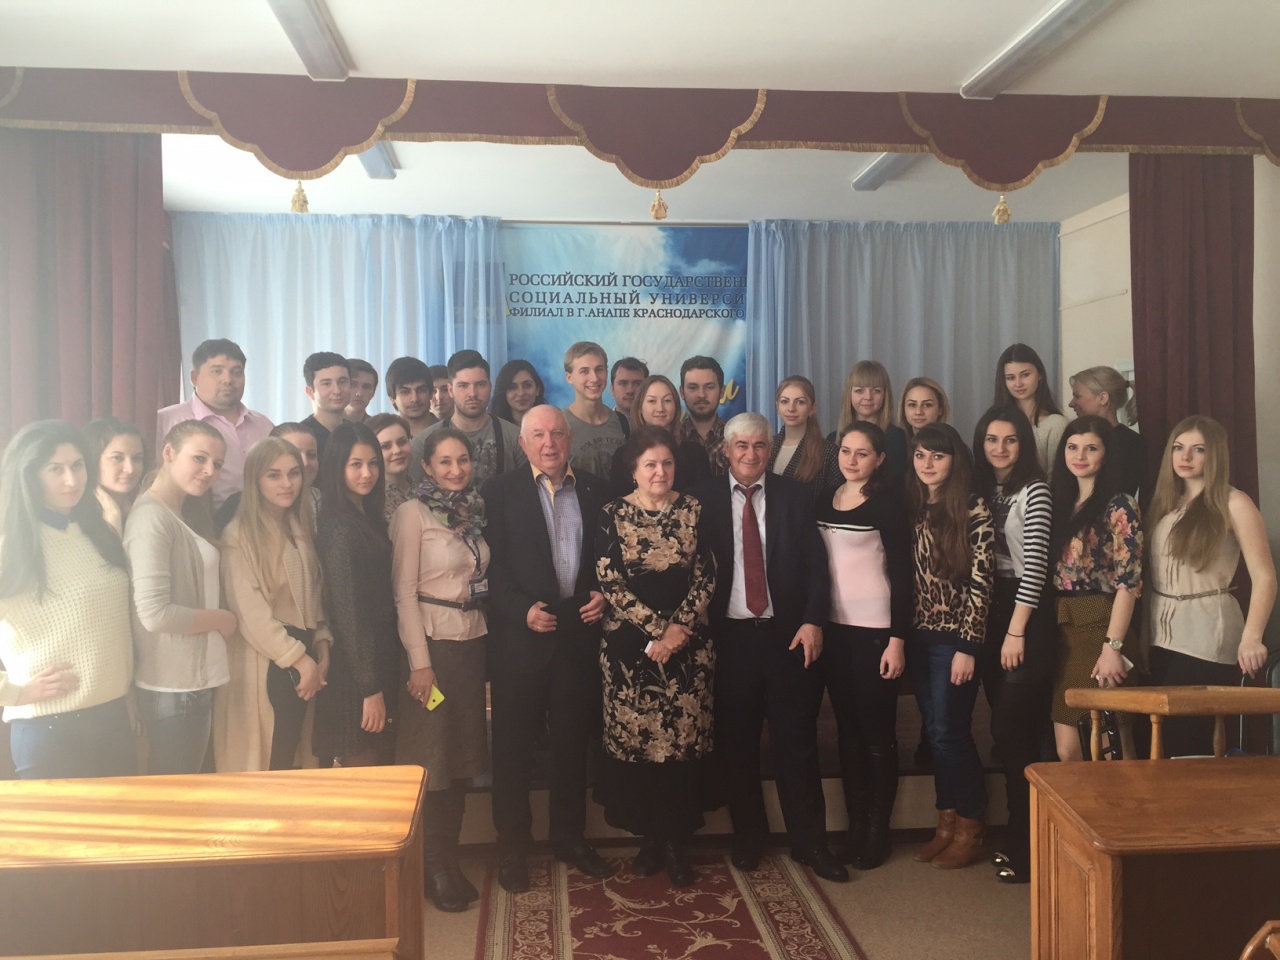 Встреча со студентами Российского государственного социального университета, филиала РГСУ в г. Анапа